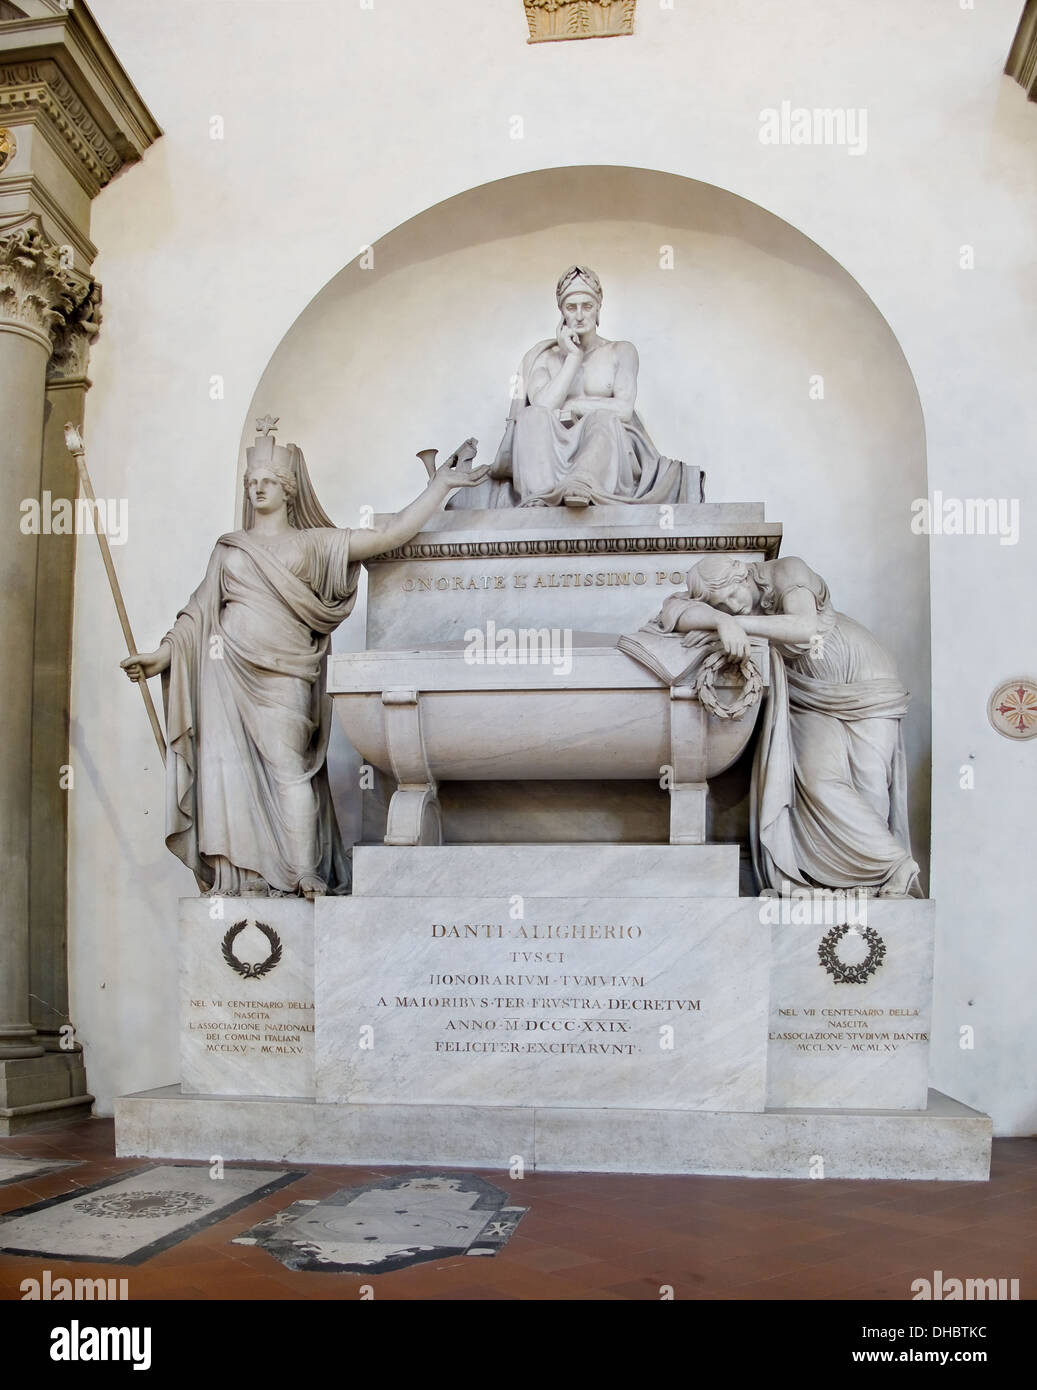 La Tomba di Dante Alighieri presso la Basilica di Santa Croce. Firenze,  Italia la tomba fu costruito per lui a Firenze nel 1829 Foto stock - Alamy